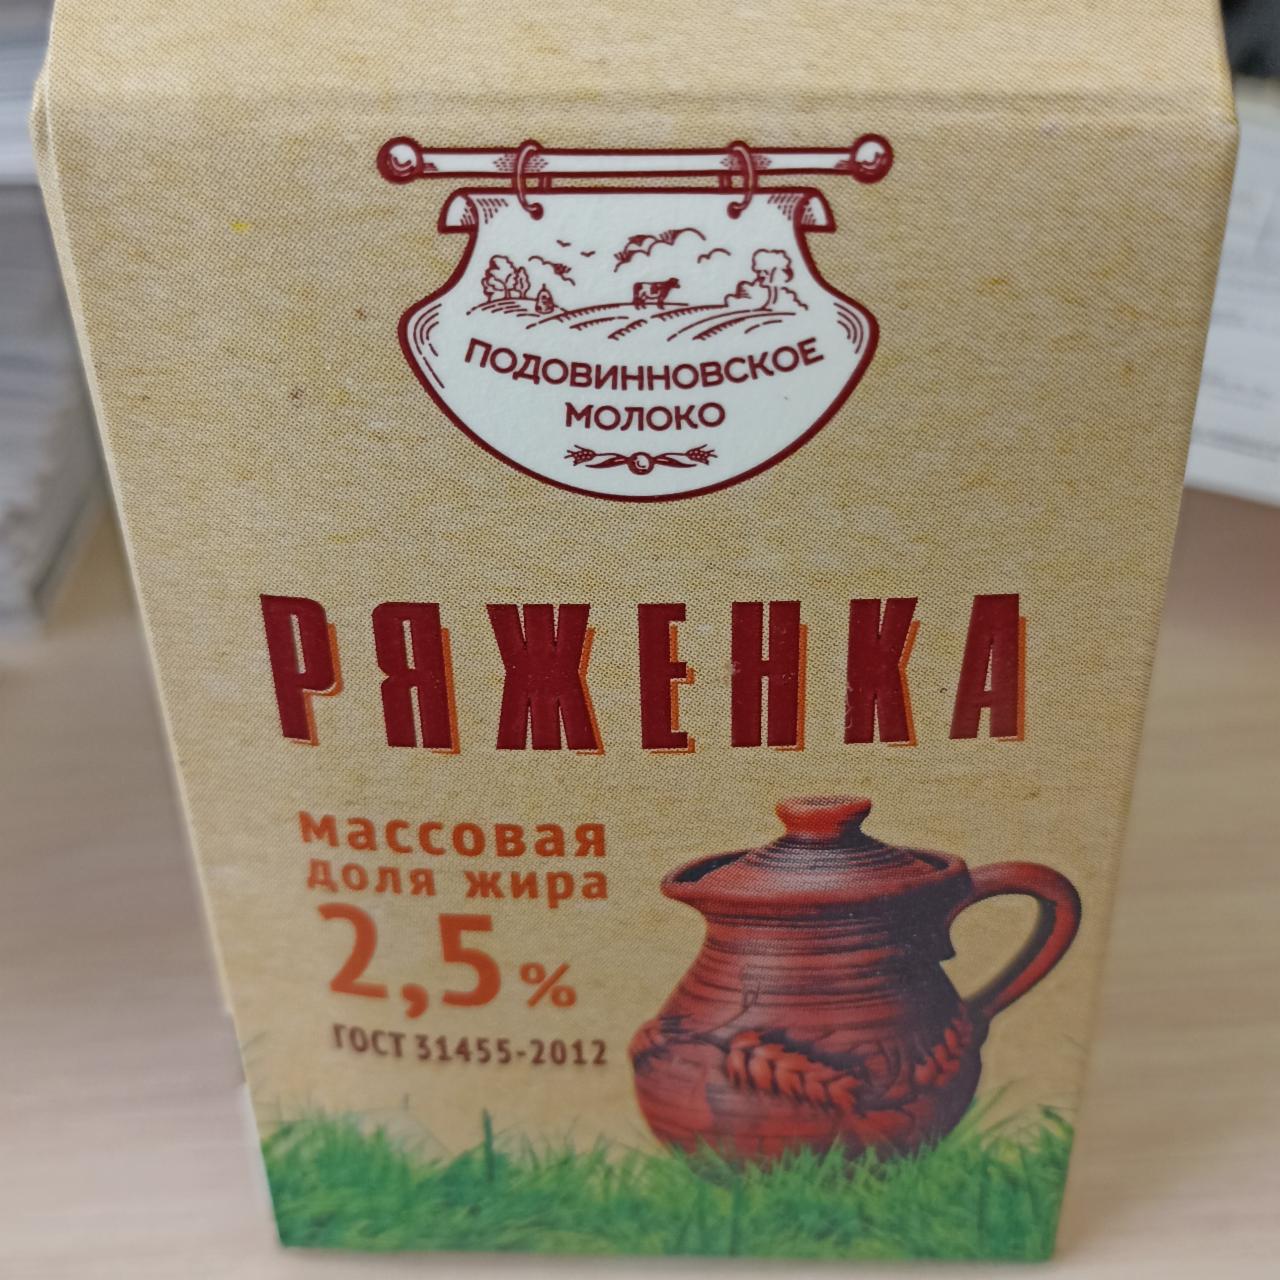 Фото - Ряженка 2.5% Подовинновское молоко